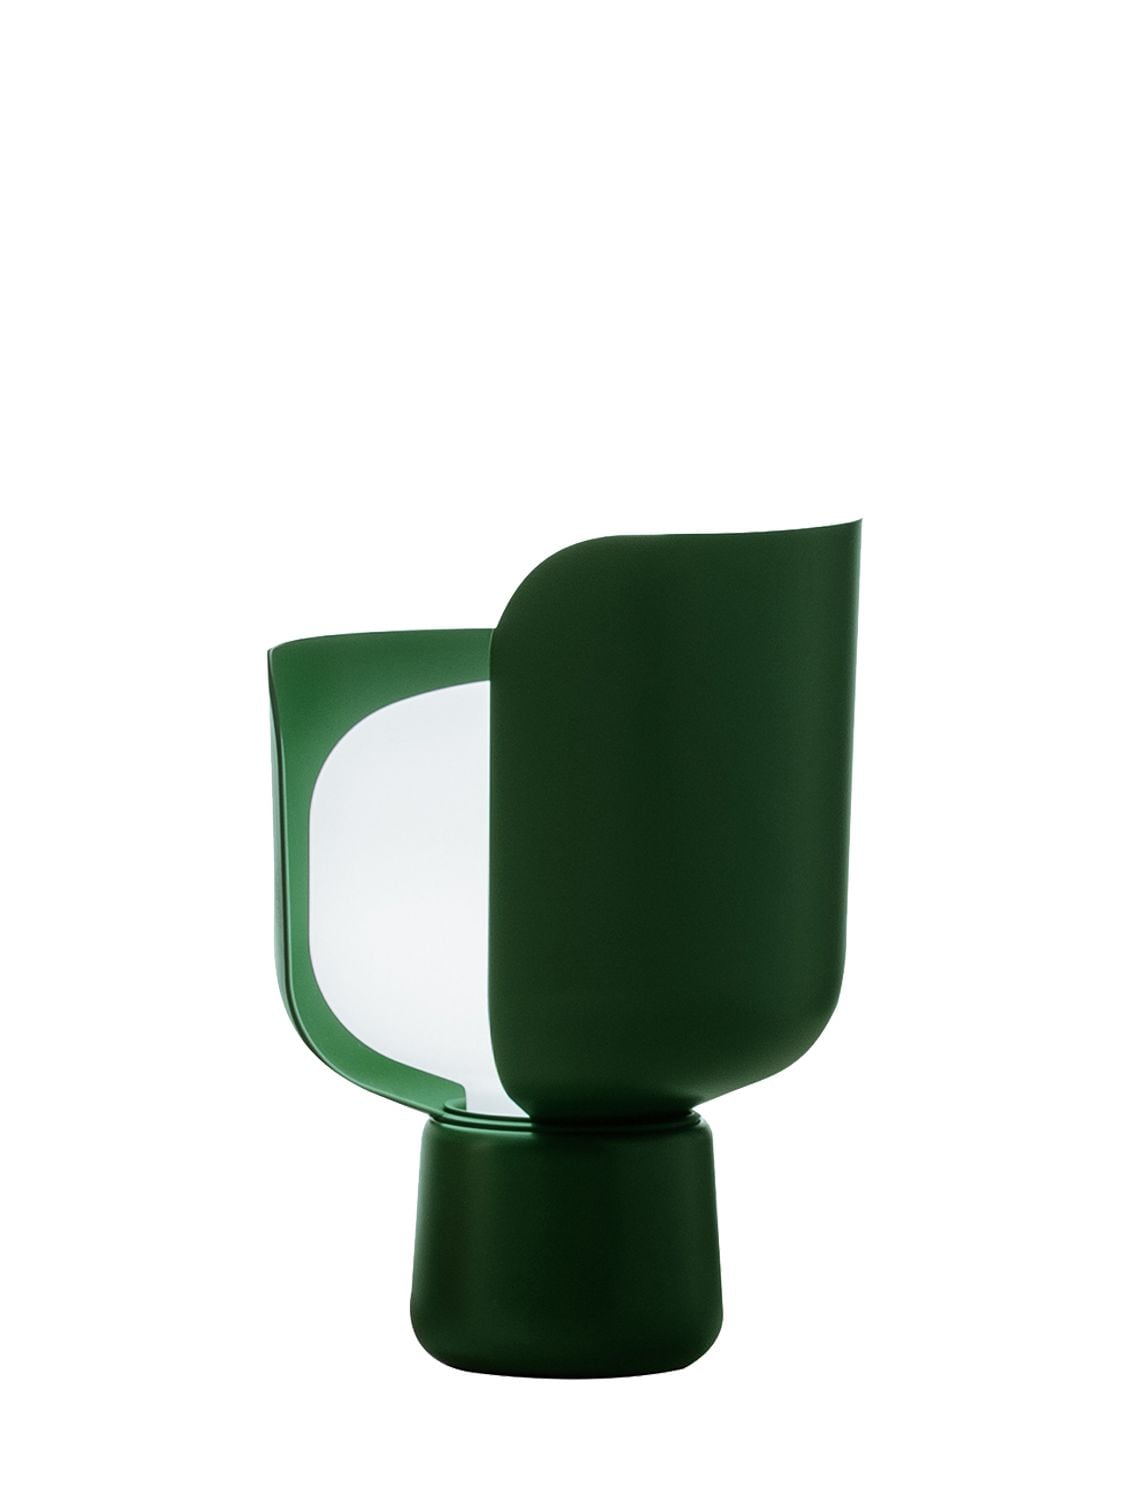 Fontanaarte Blom Table Lamp In Green